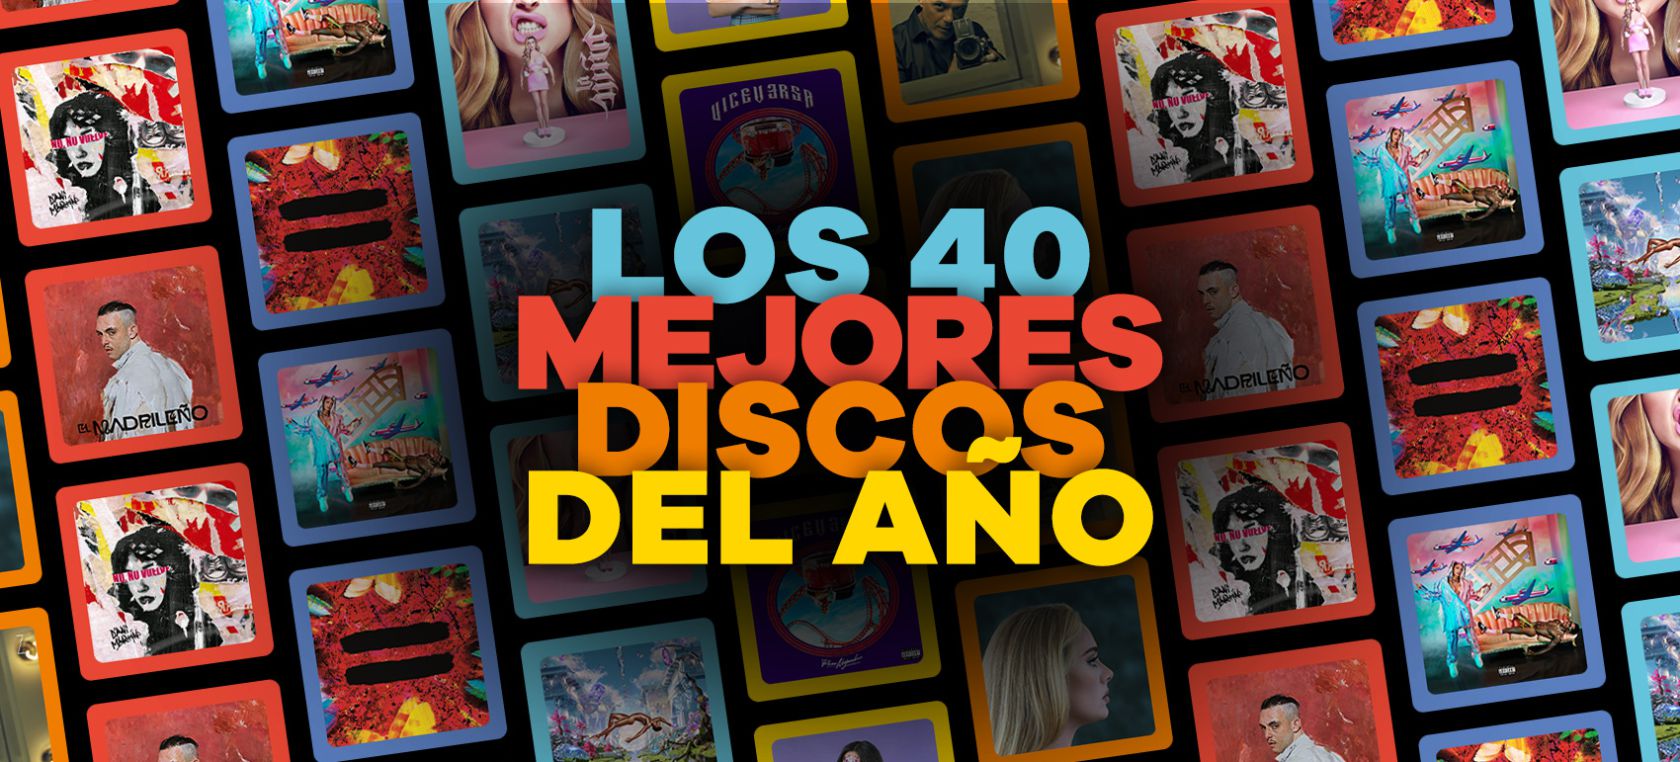 Los 40 mejores discos de 2021 según la redacción de LOS40.COM